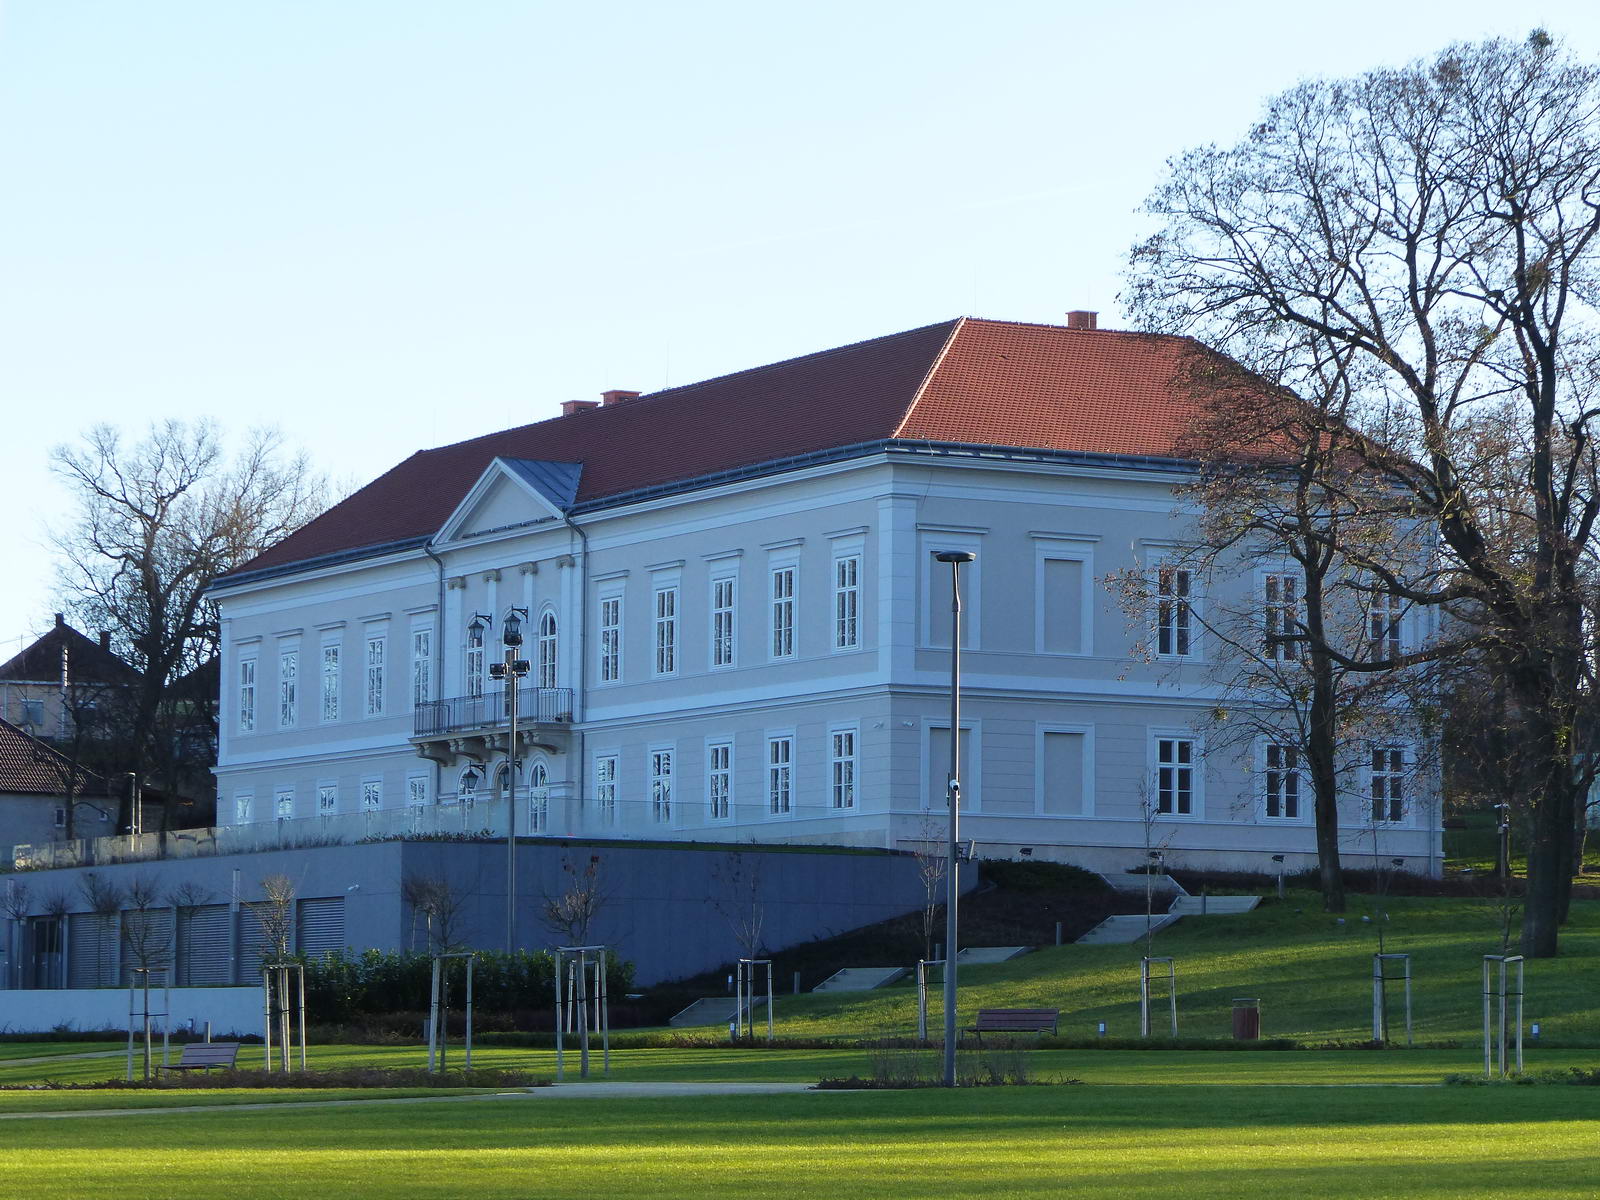 A Hochburg-Lamberg kastély az előtte épült, félig a földbe süllyesztett konferenciateremmel, ami teljesen elrontja a klasszicista kastély összhatását.